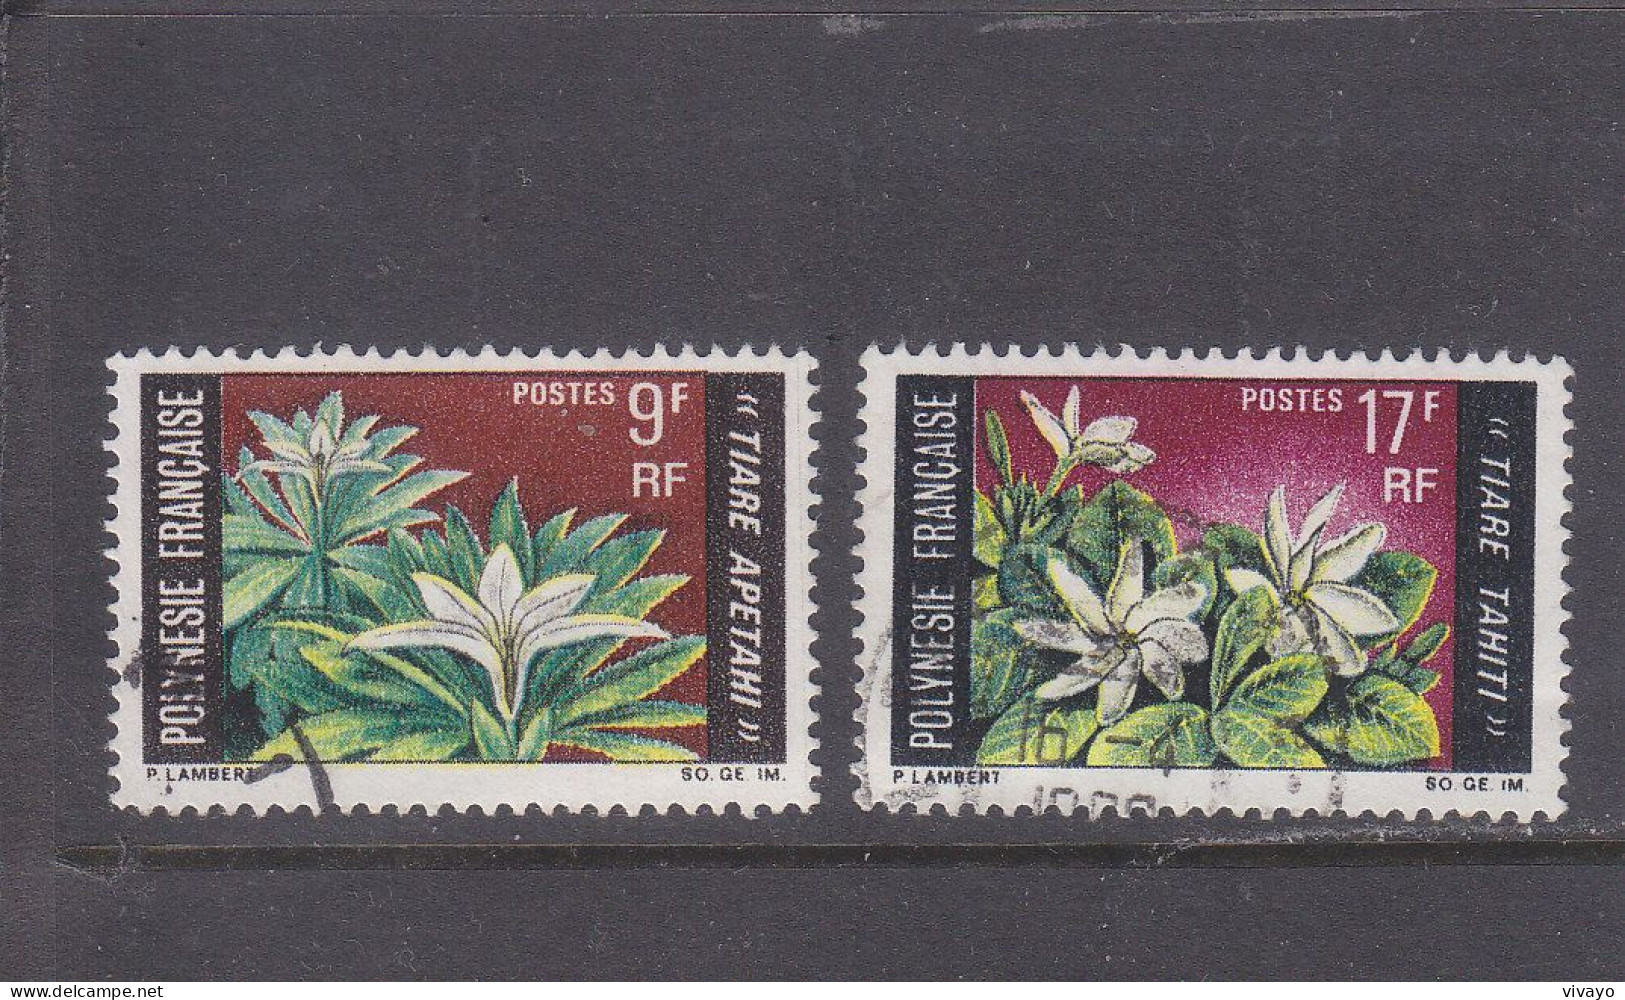 FRENCH POLYNESIA - POLYNESIE FRAN. - O / FINE CANCELLED - 1969 - LOCAL FLOWERS - Yv. 64/65  - Mi. 90/91 - Gebraucht